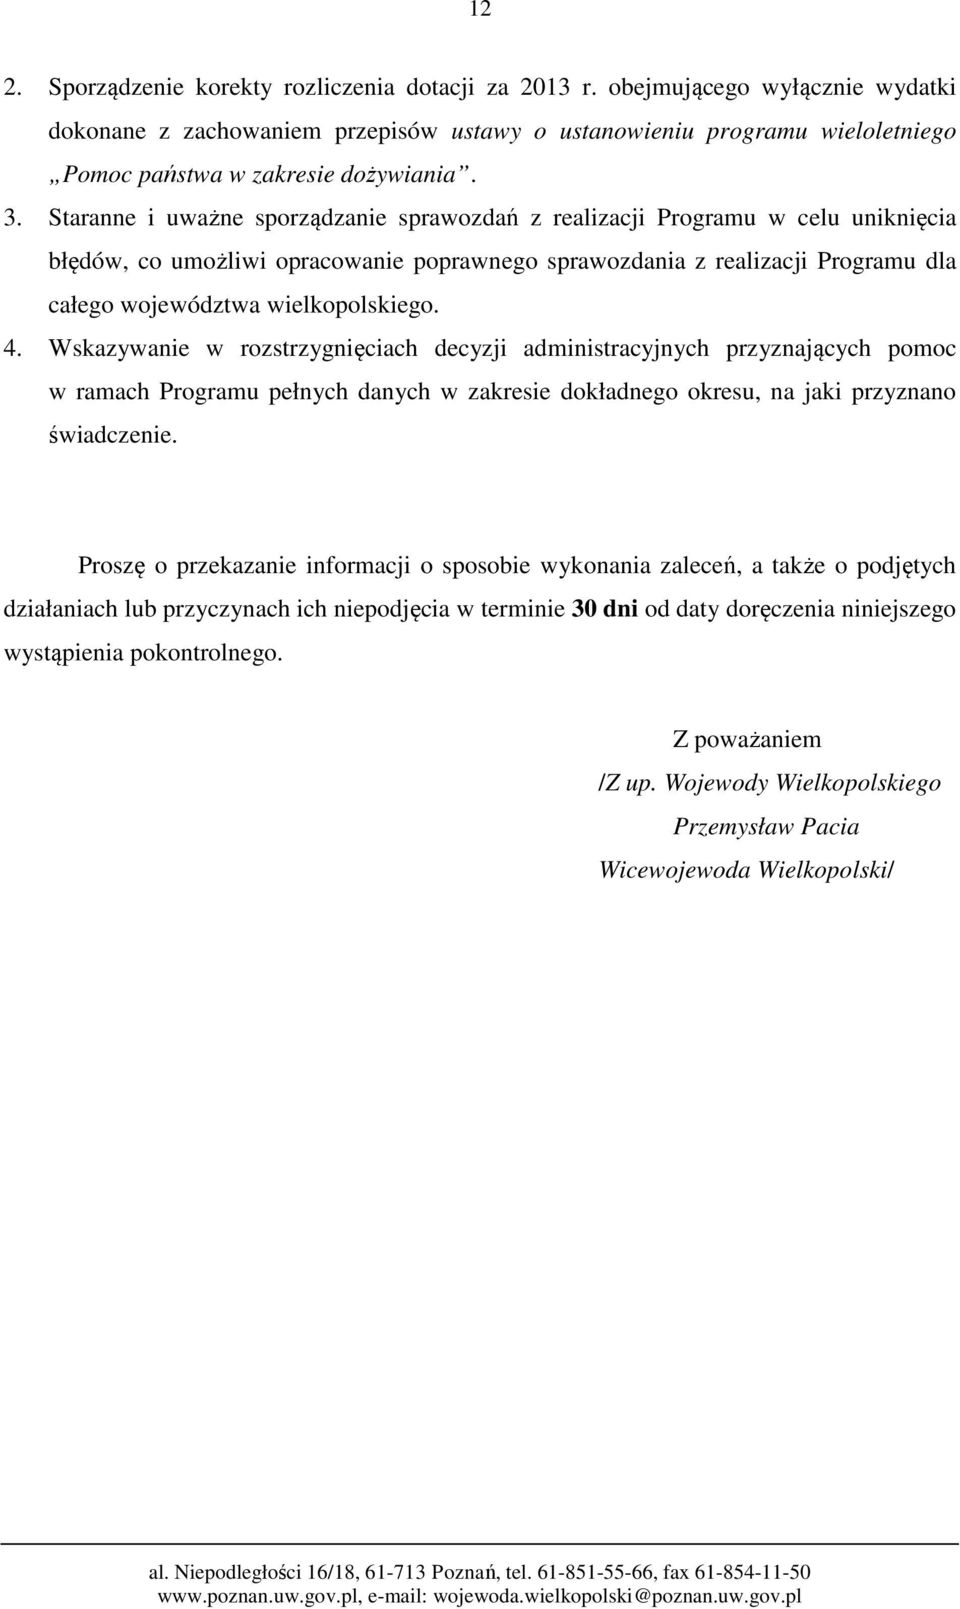 Staranne i uważne sporządzanie sprawozdań z realizacji Programu w celu uniknięcia błędów, co umożliwi opracowanie poprawnego sprawozdania z realizacji Programu dla całego województwa wielkopolskiego.